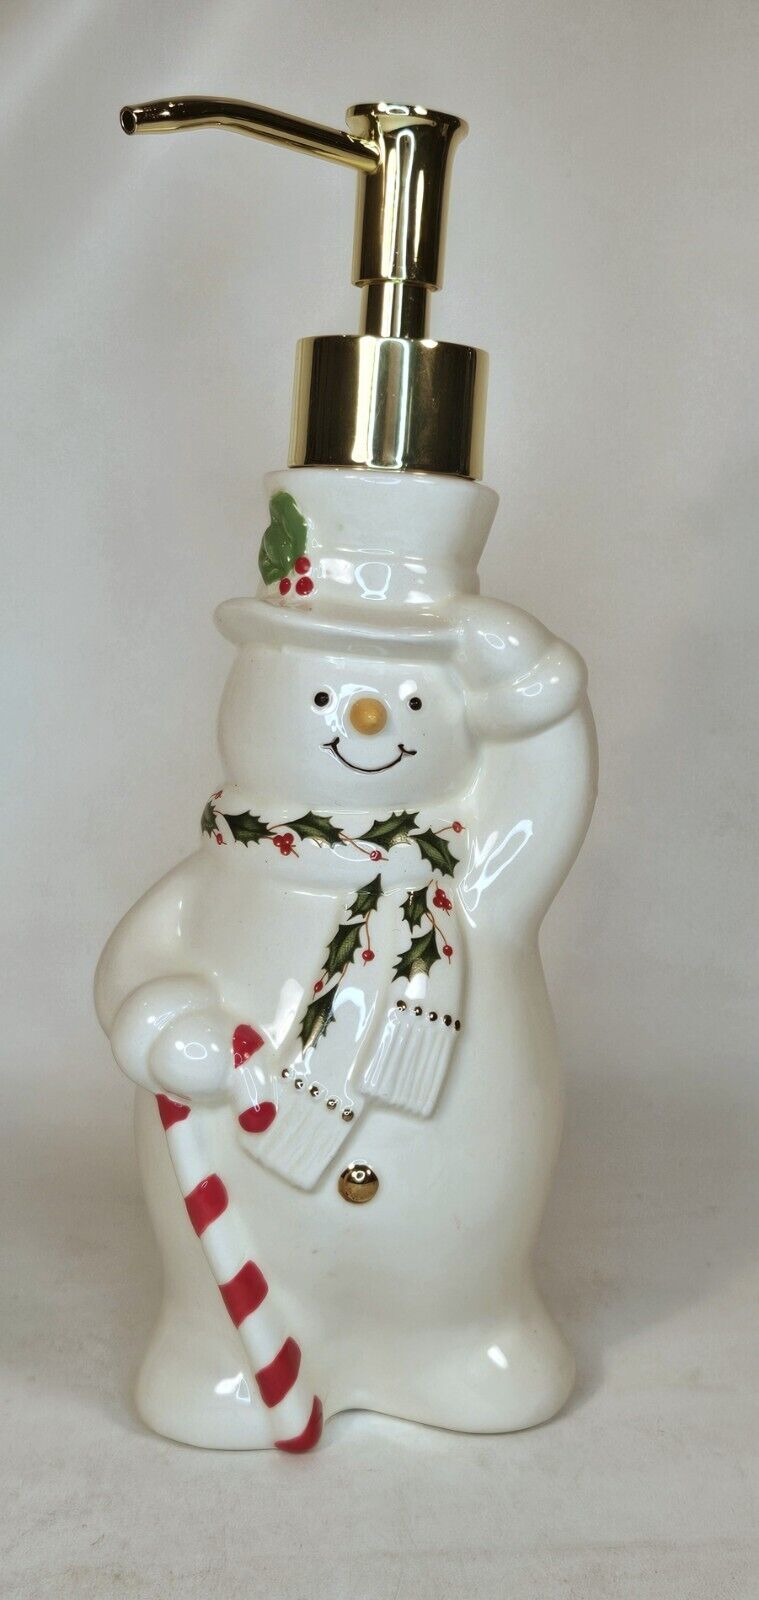 Lenox Snowman Soap Dispensor